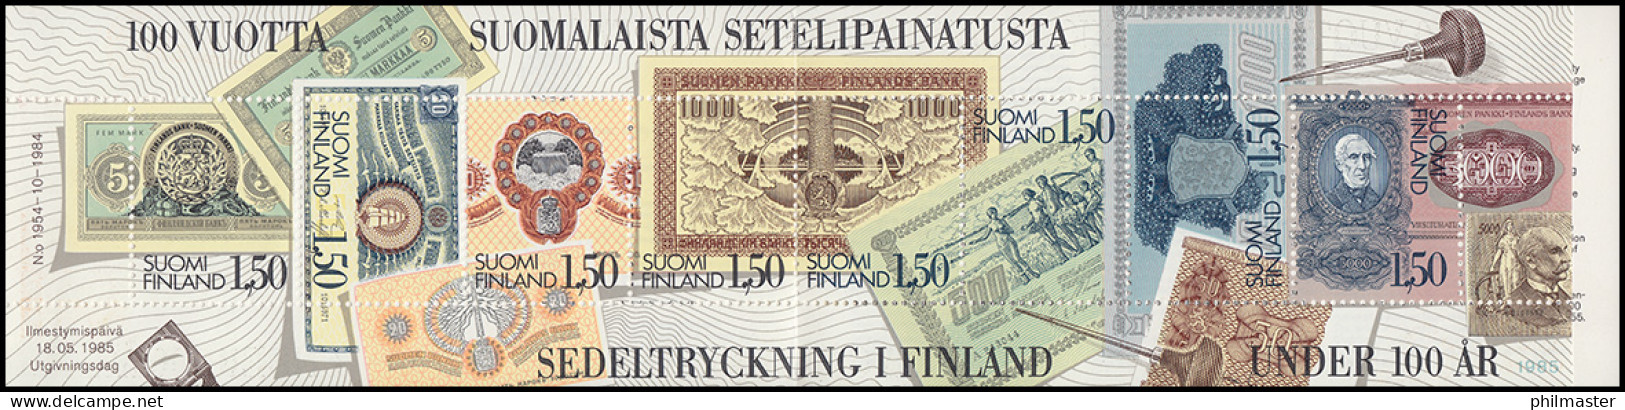 Finnland Markenheftchen 15 Banknotendruckerei, ** Postfrisch - Markenheftchen